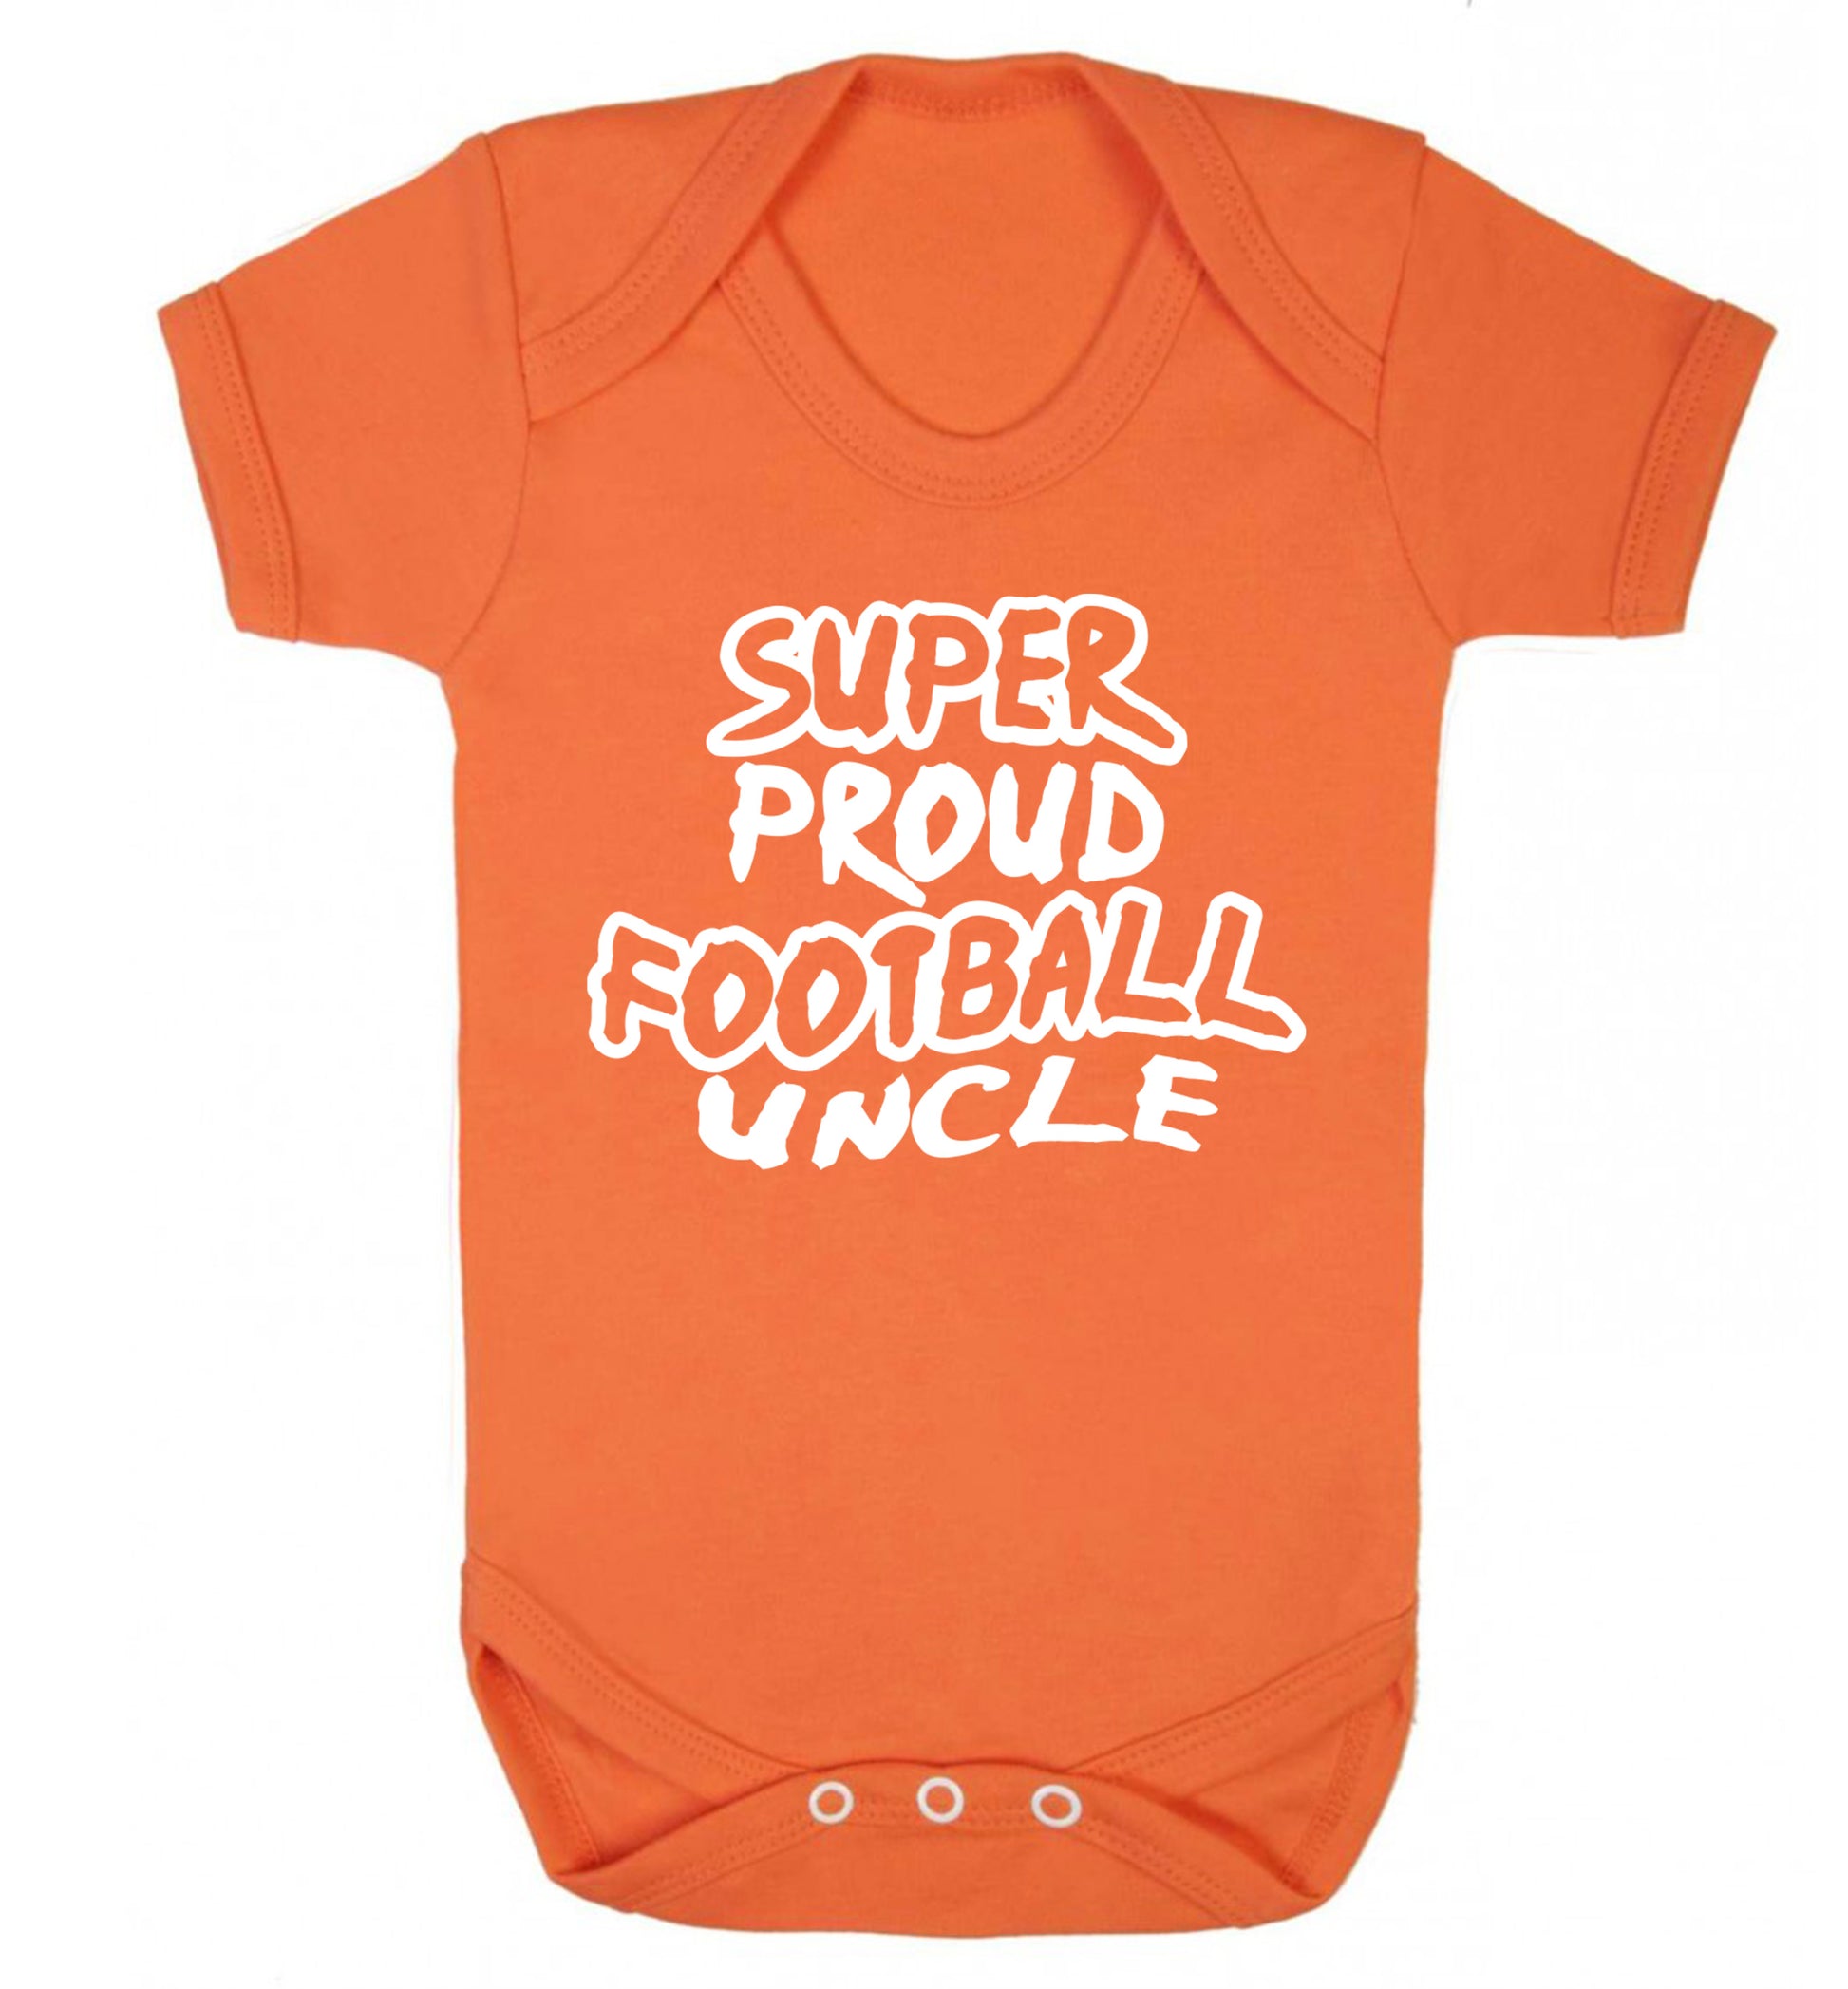 Super proud football uncle Baby Vest orange 18-24 months